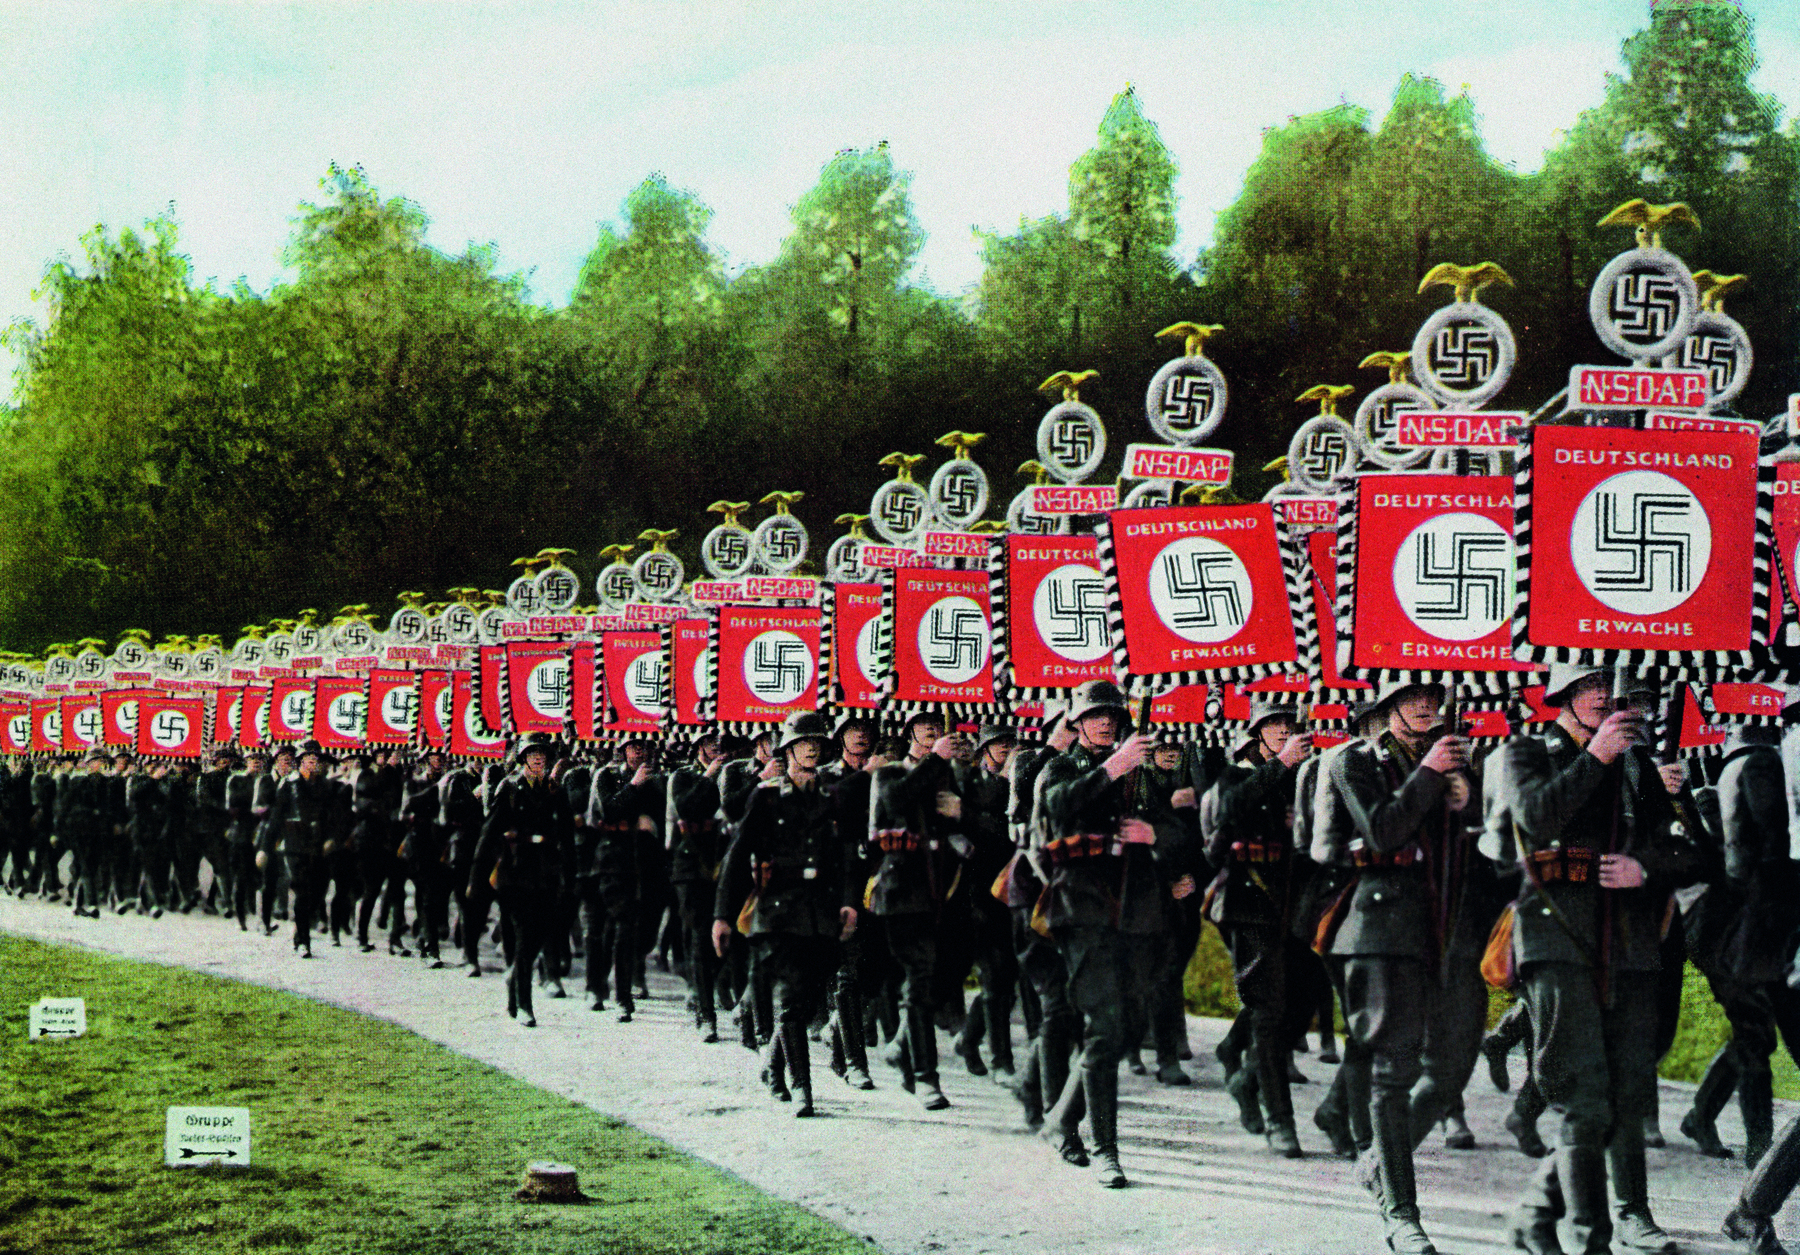 Fotografia. Soldados enfileirados, portando hastes com cartazes vermelhos com textos e símbolos de uma suástica.